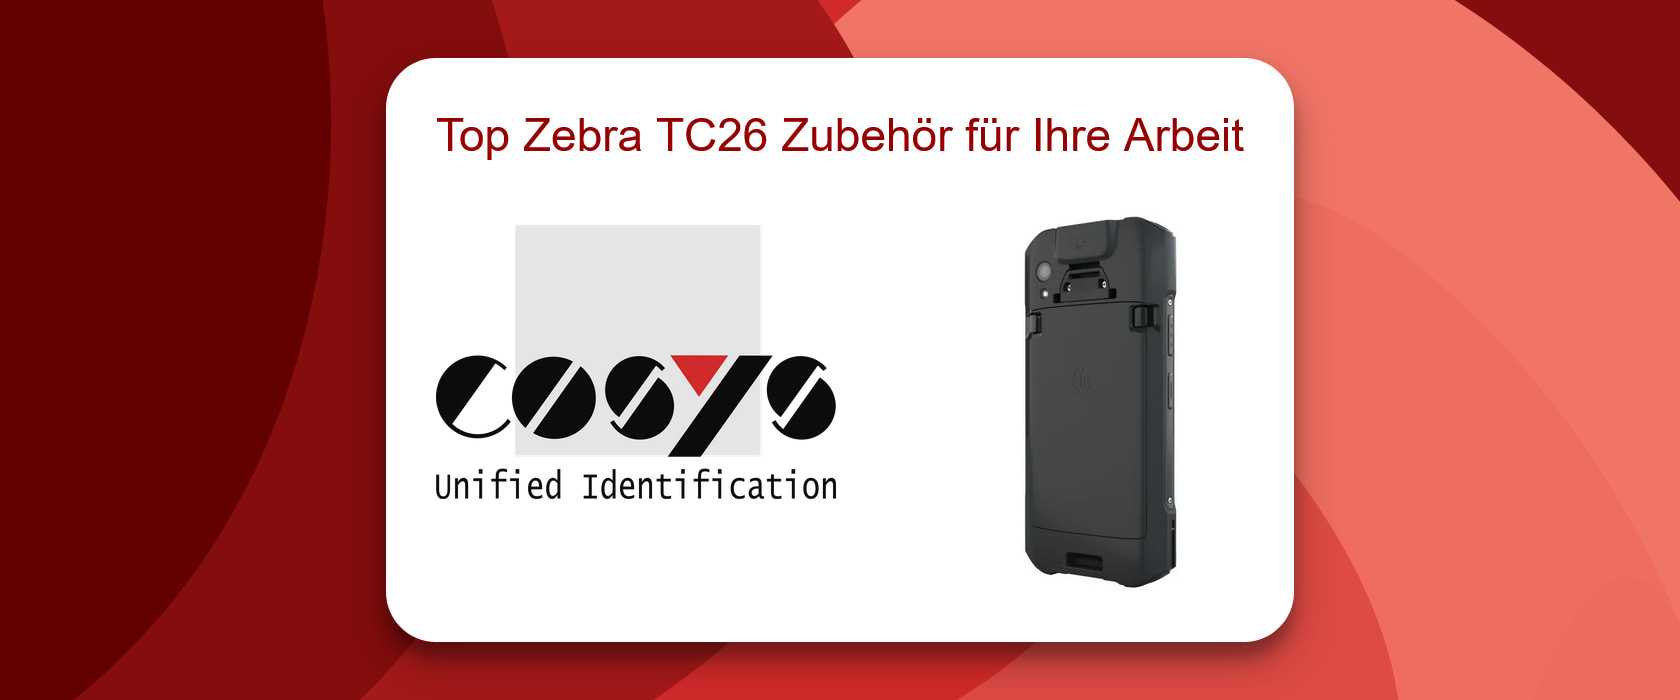 Zubehör für Zebra TC26 zur Leistungssteigerung